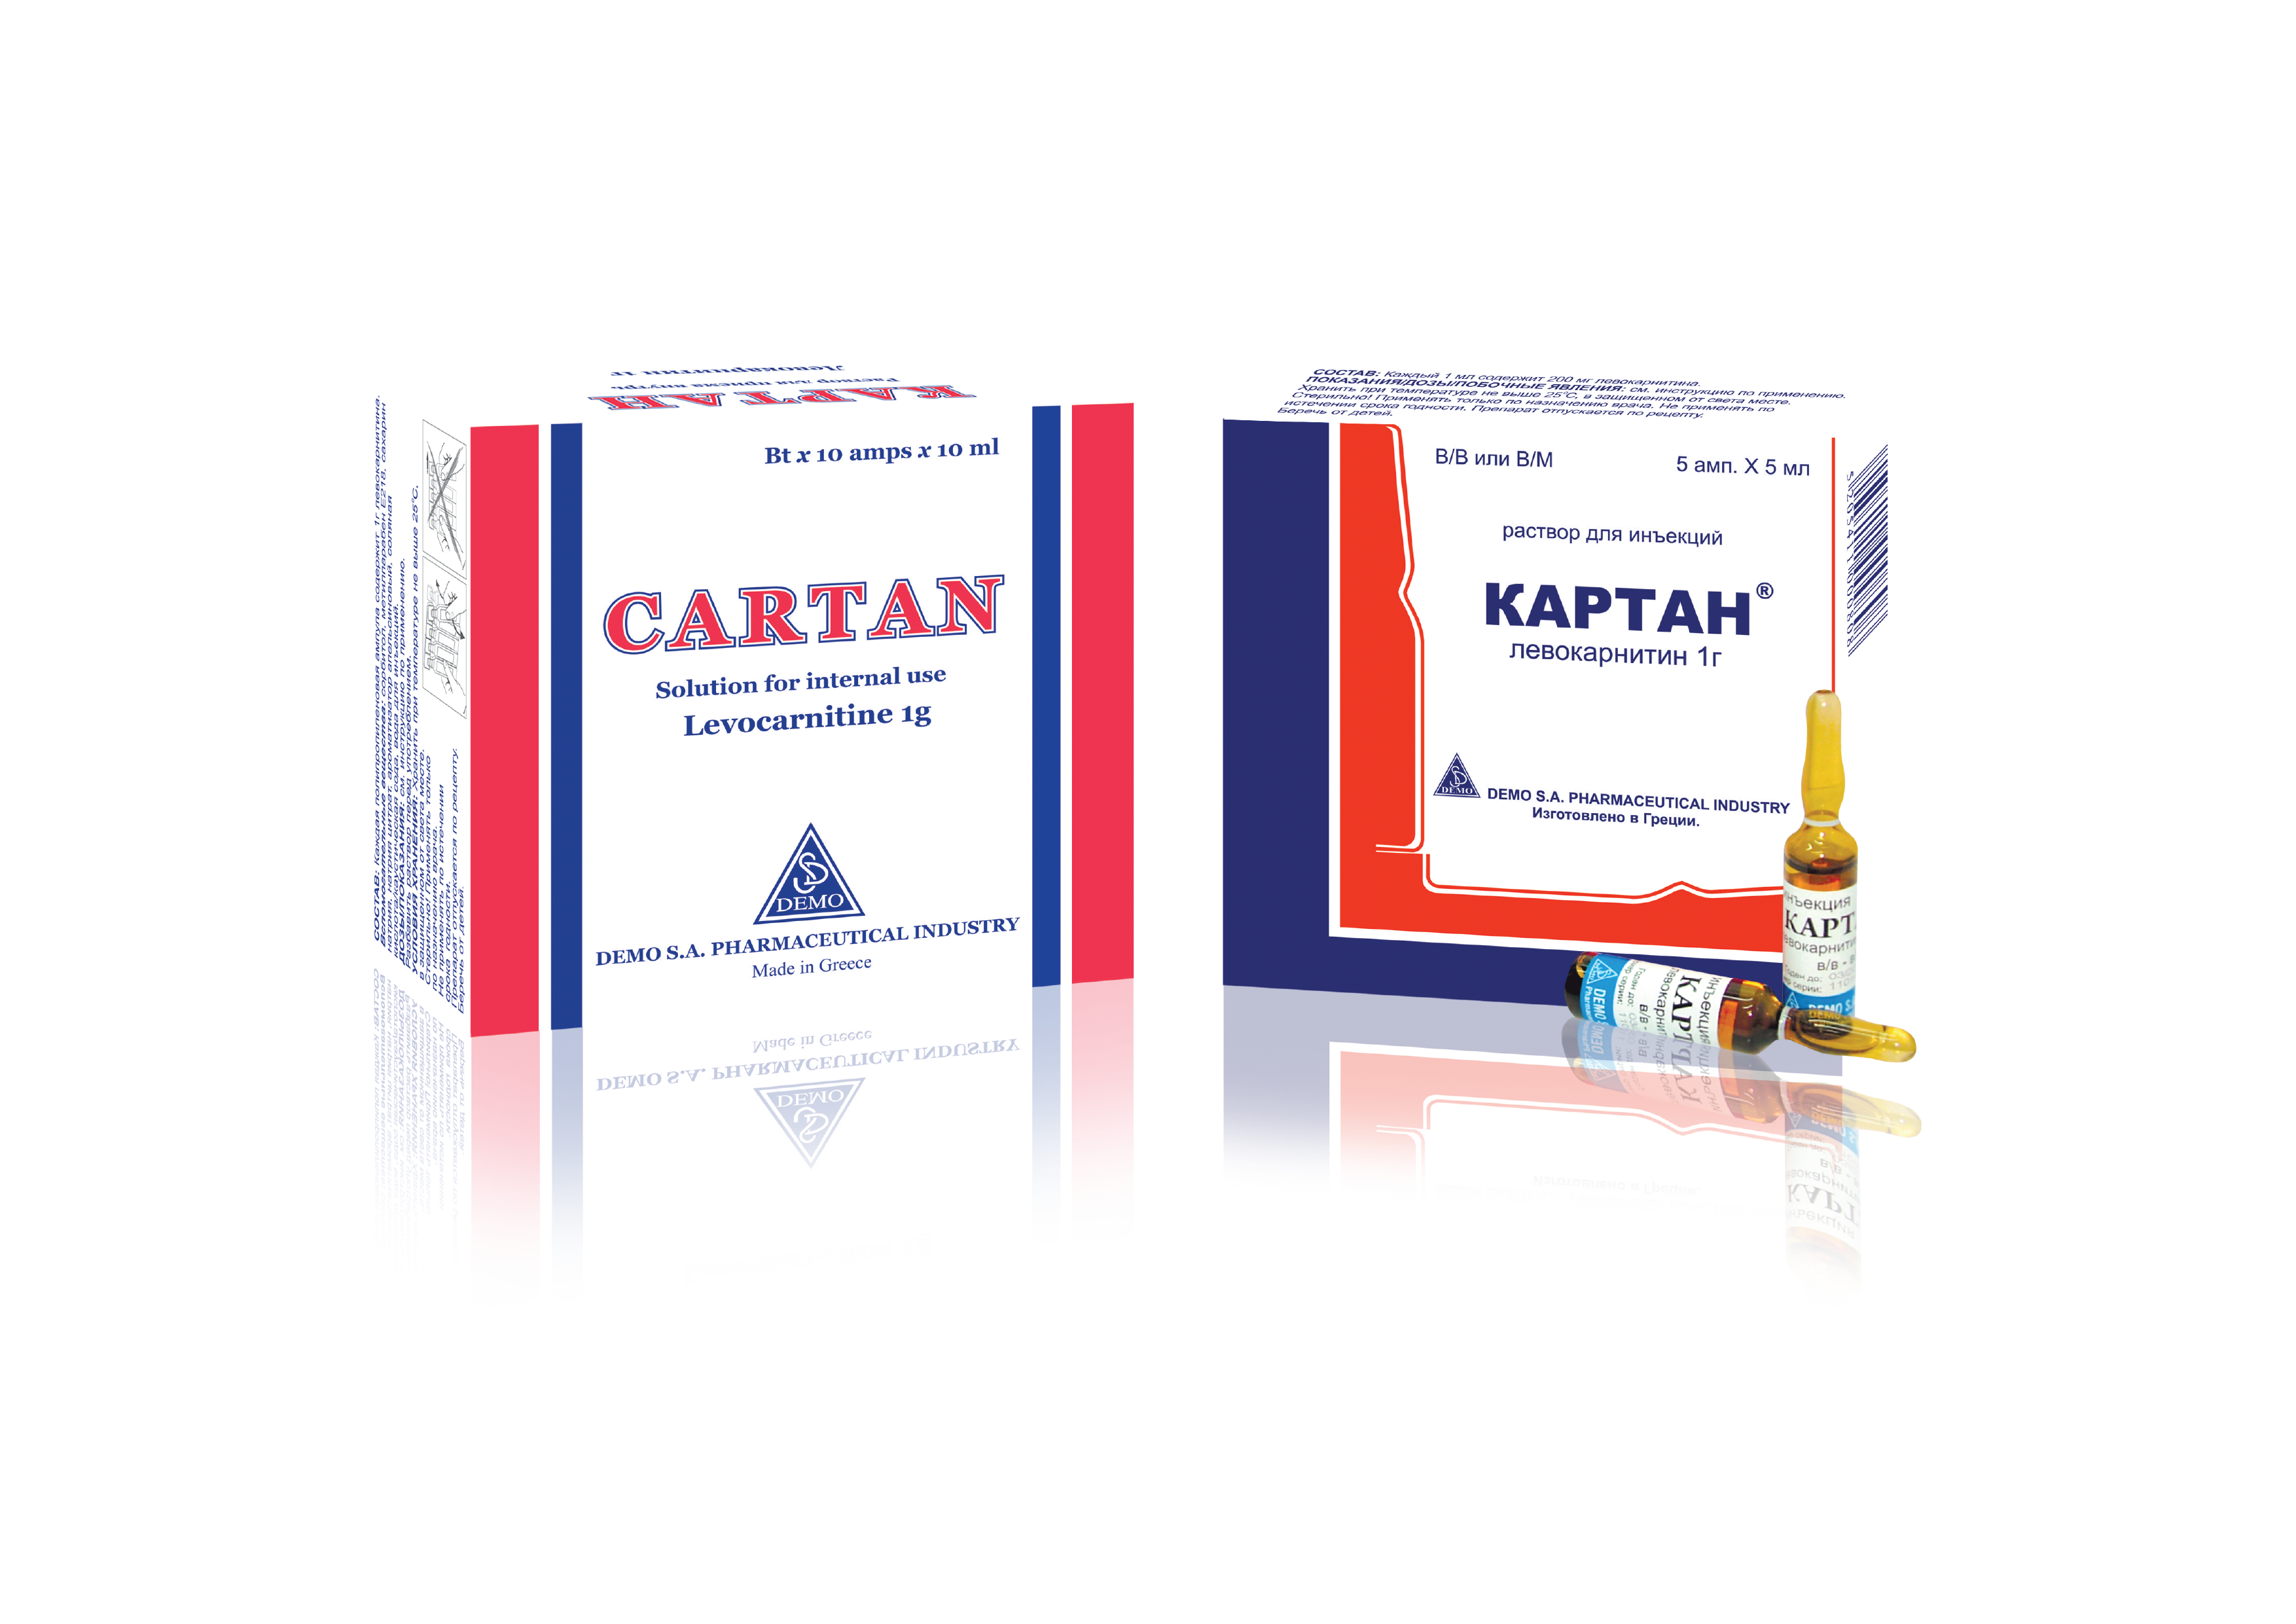 კარტანი / Cartan